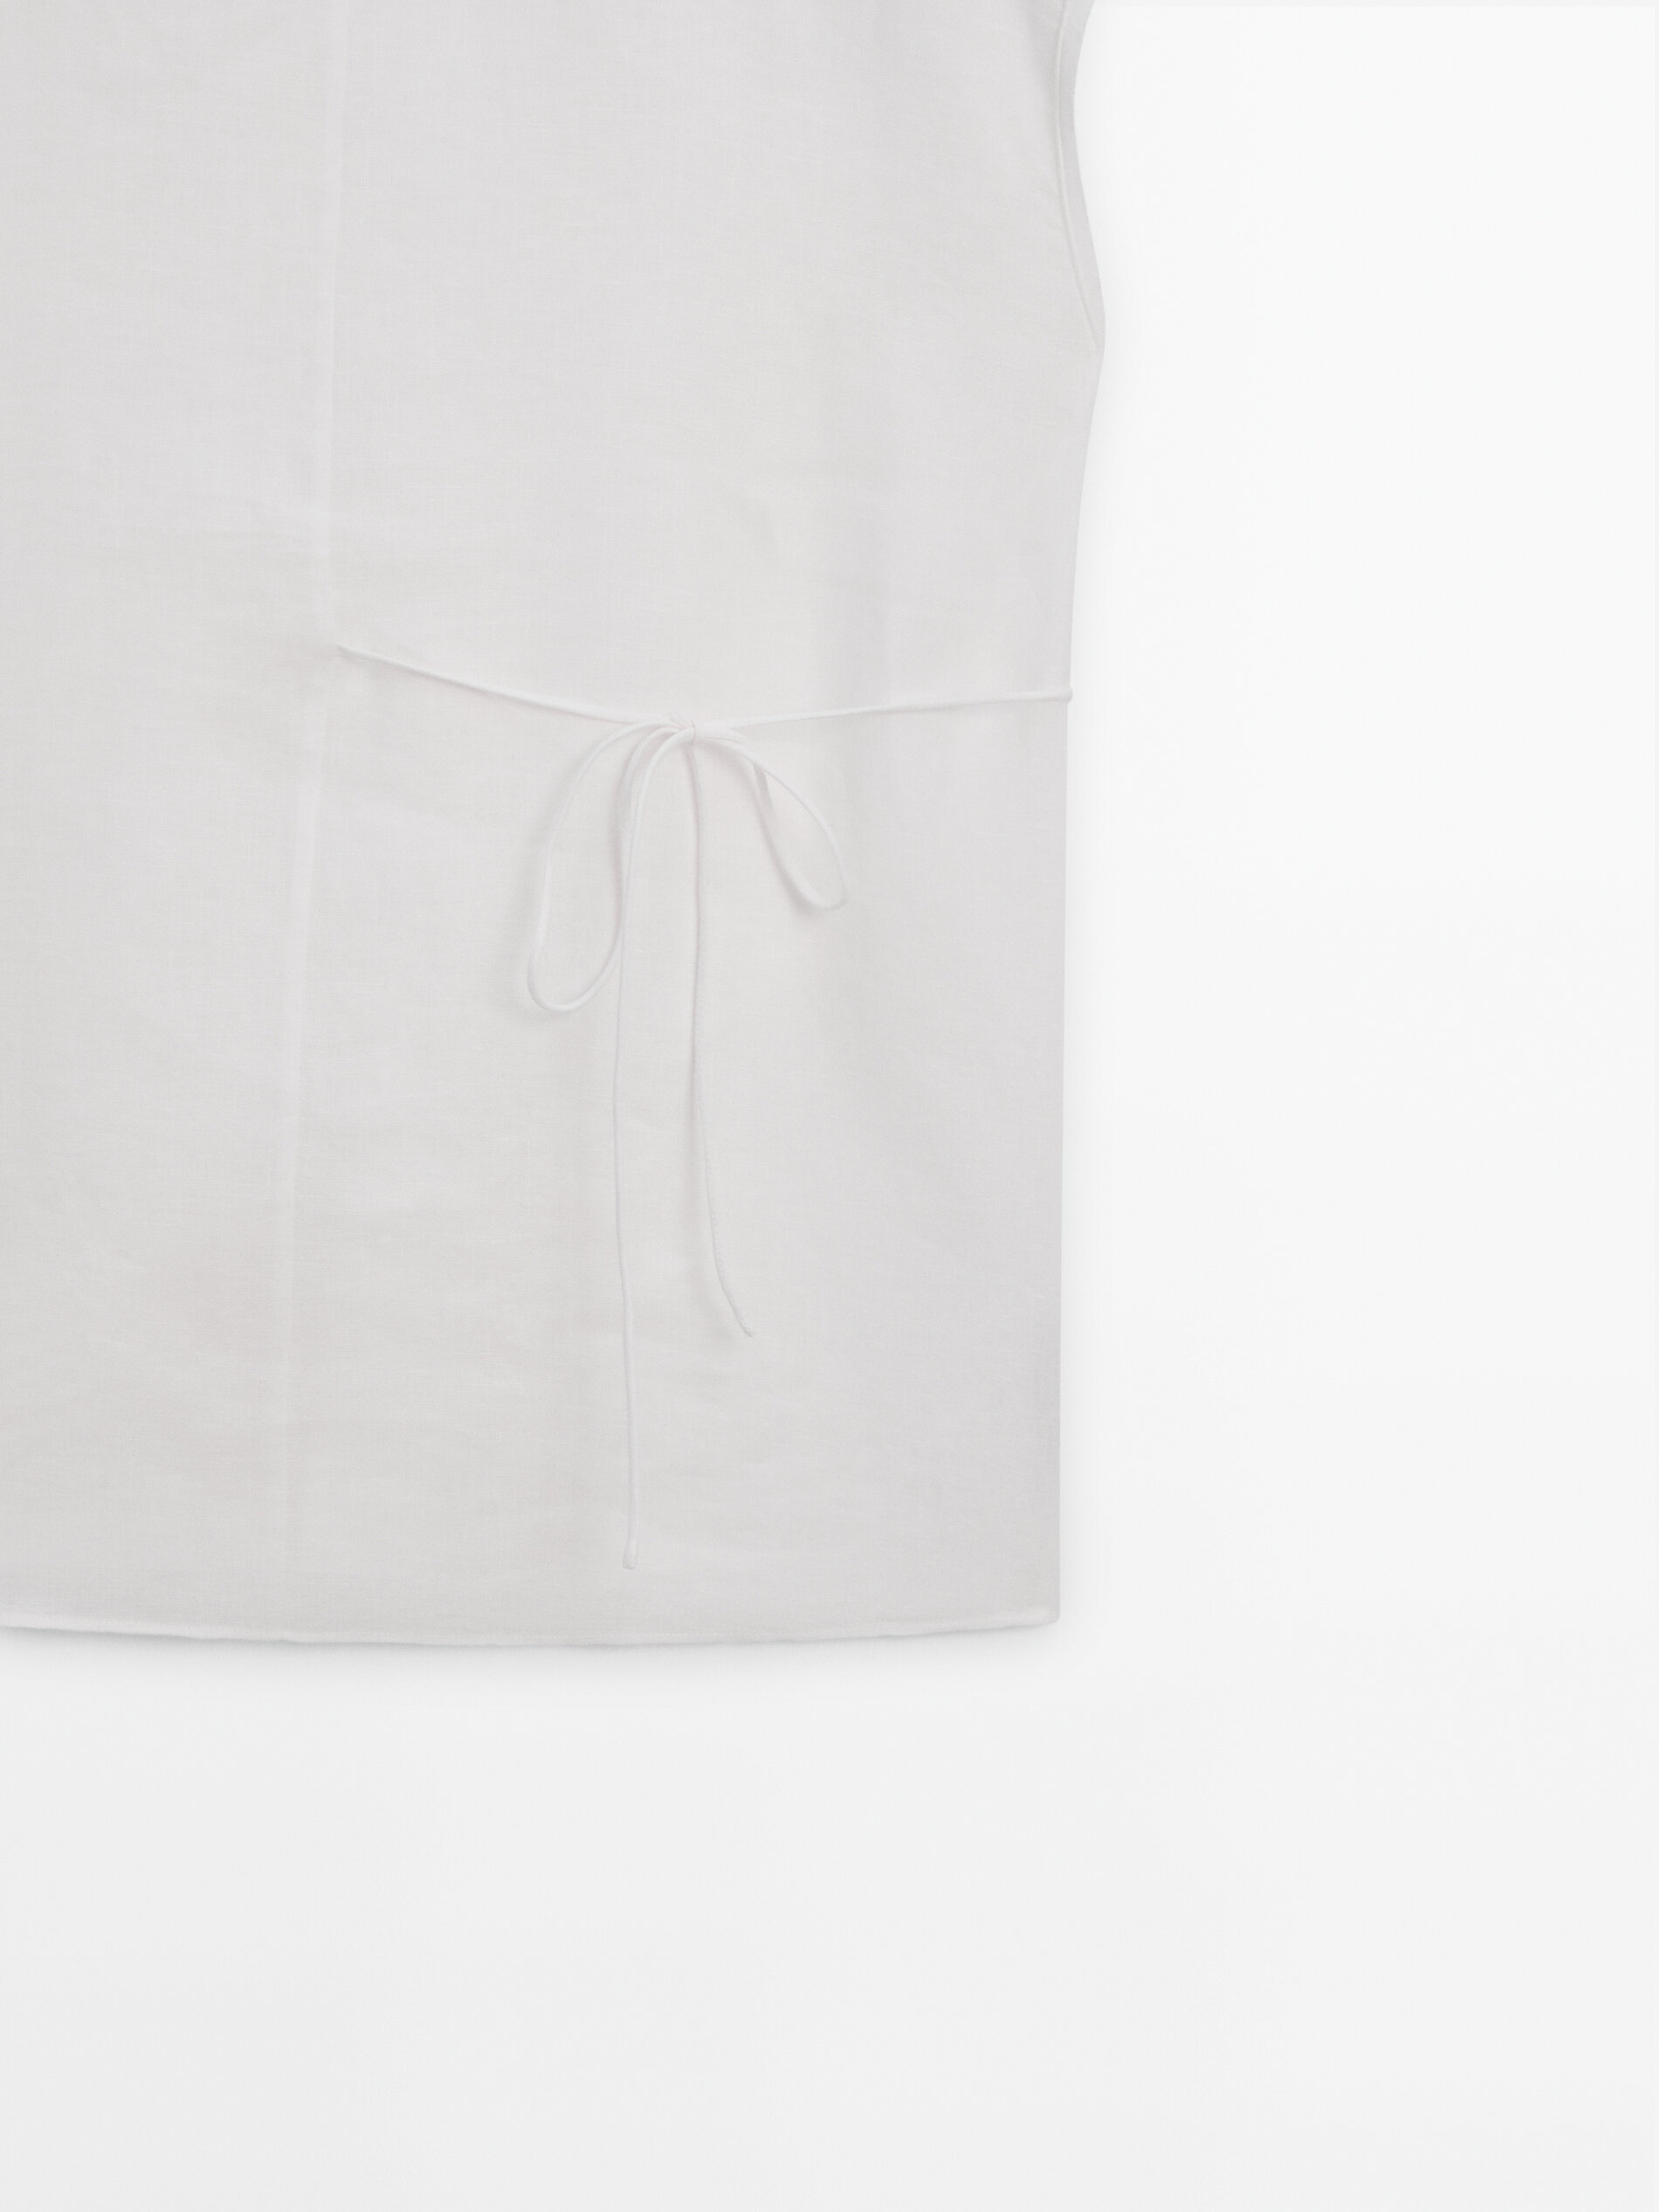 Camiseta manga caída cordones 100% lino